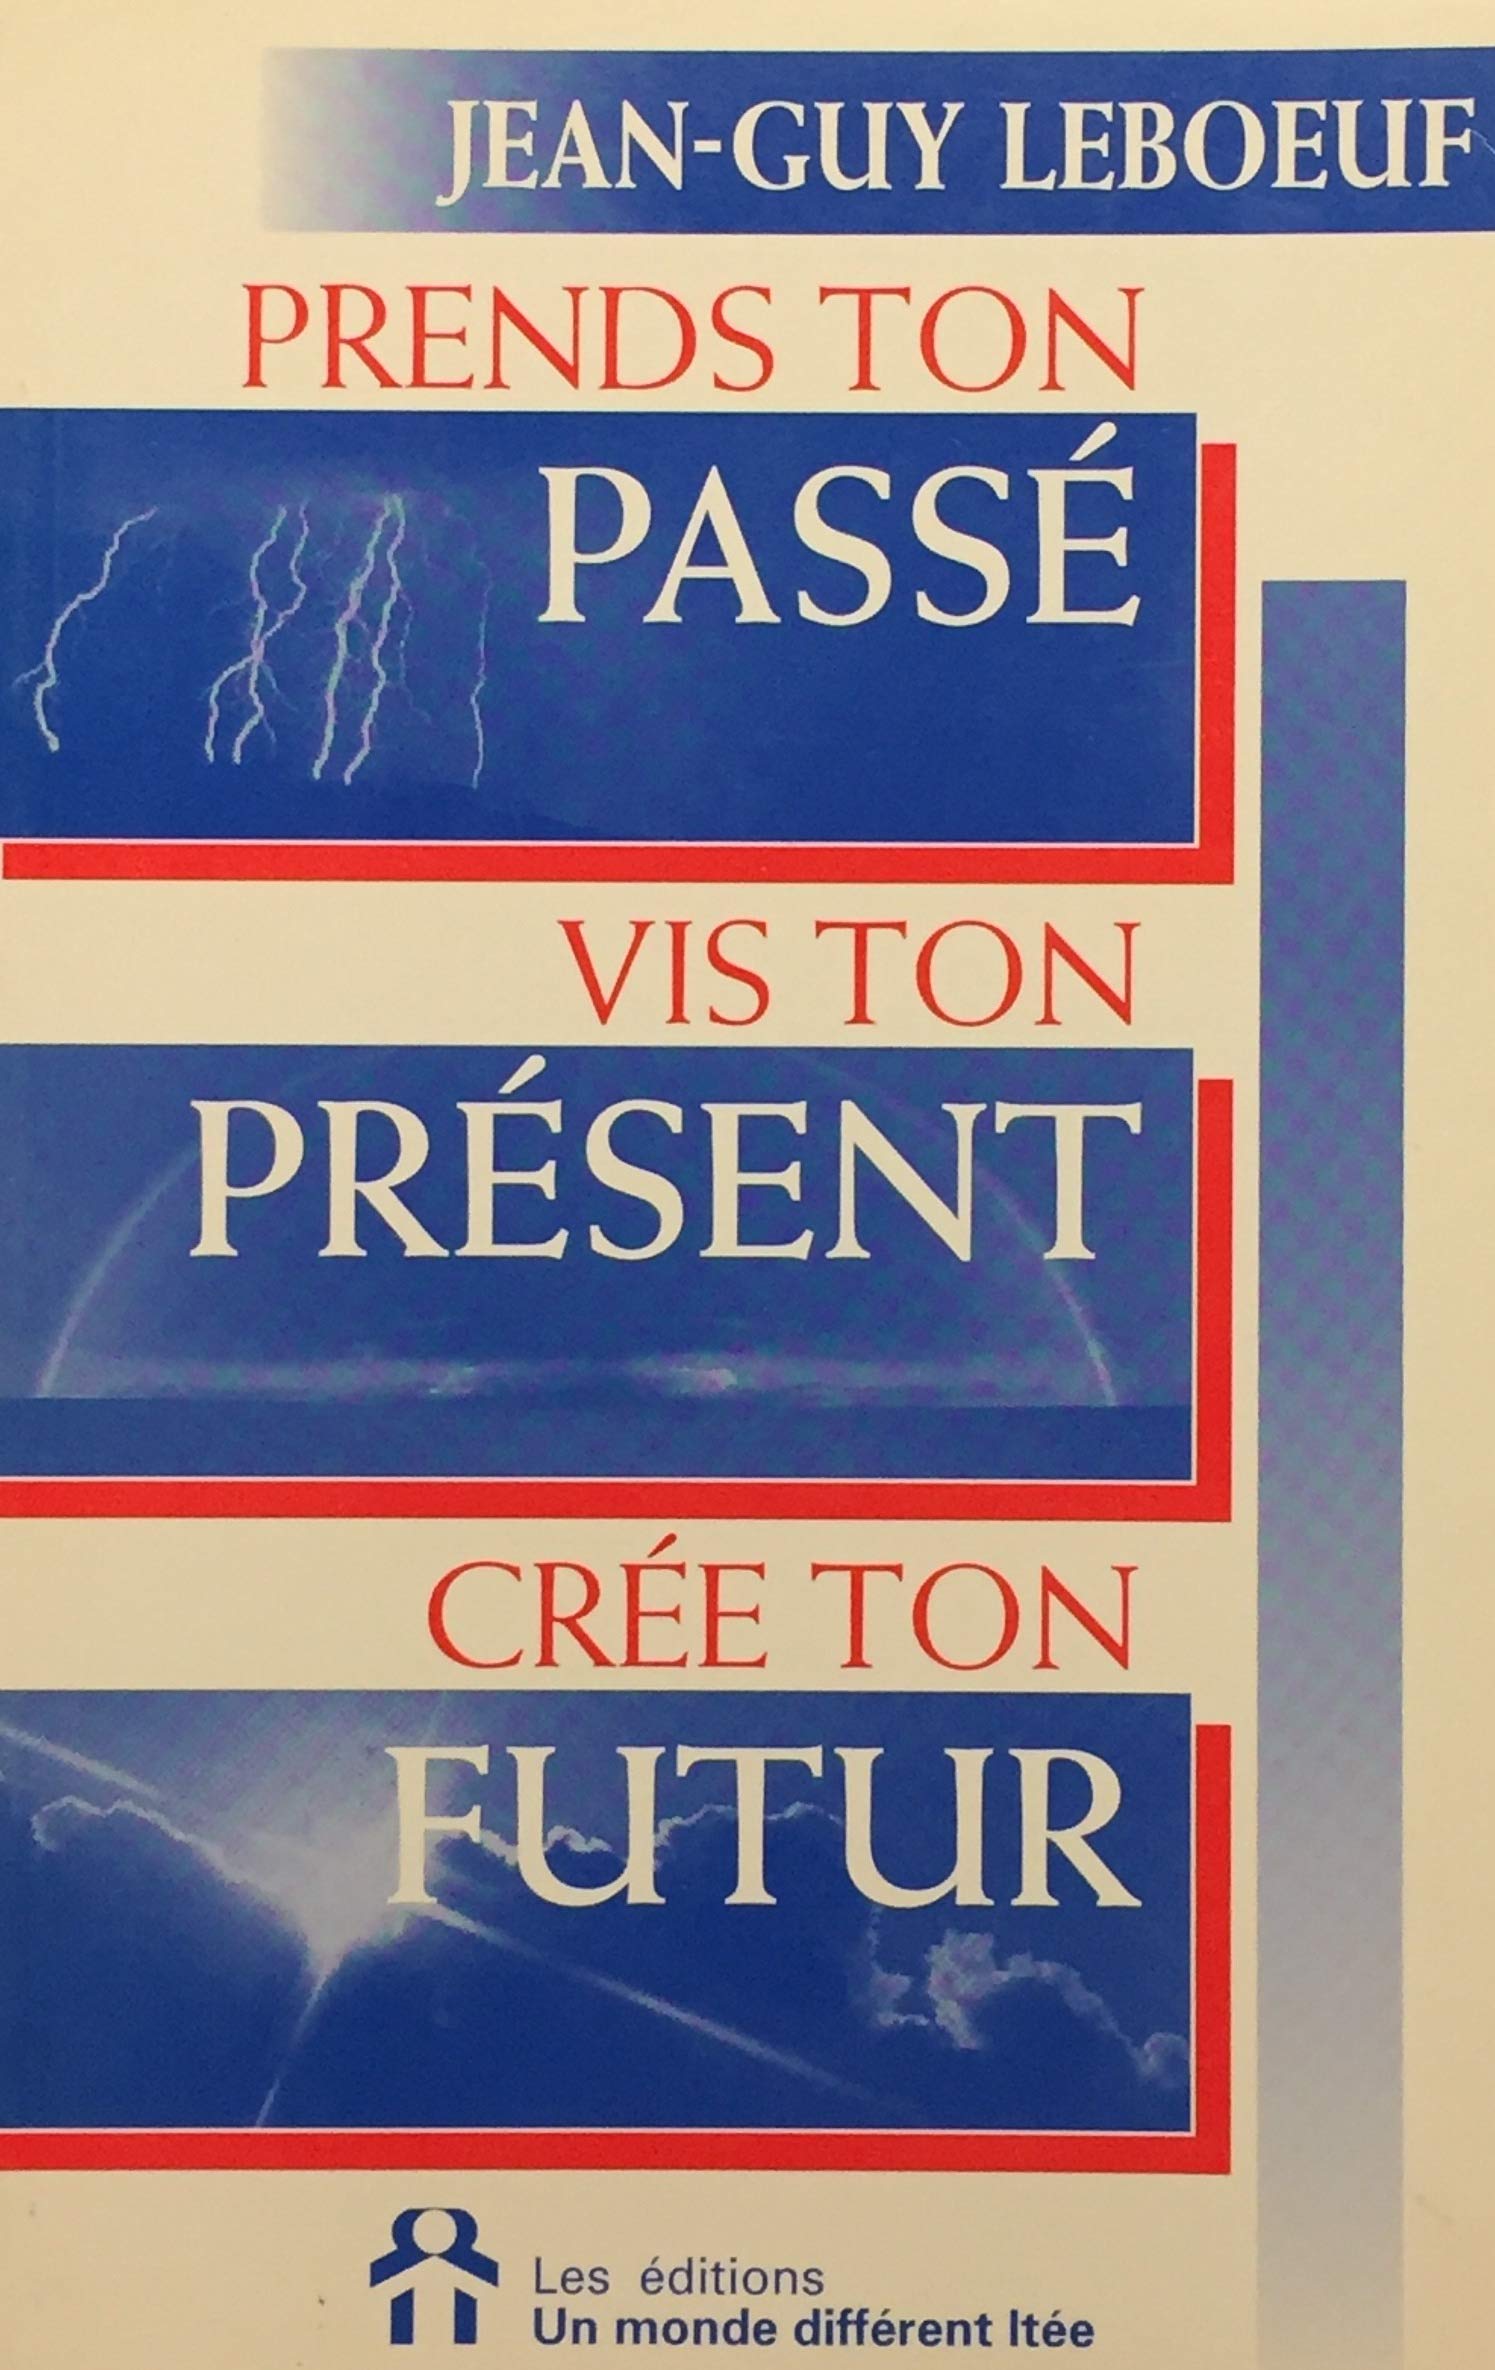 Livre ISBN 2892251974 Prends ton passé, vis ton présent, crée ton futur (Jean-Guy Leboeuf)